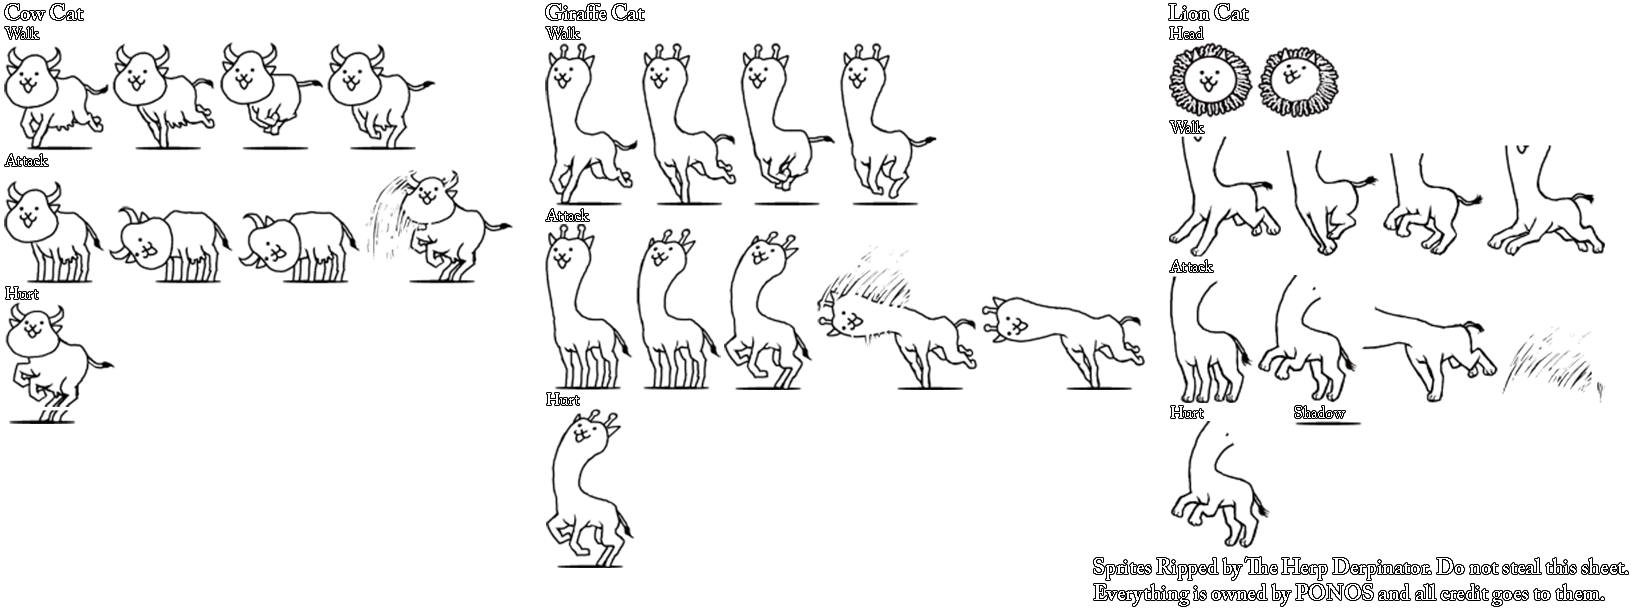 giraffe cat battle cats